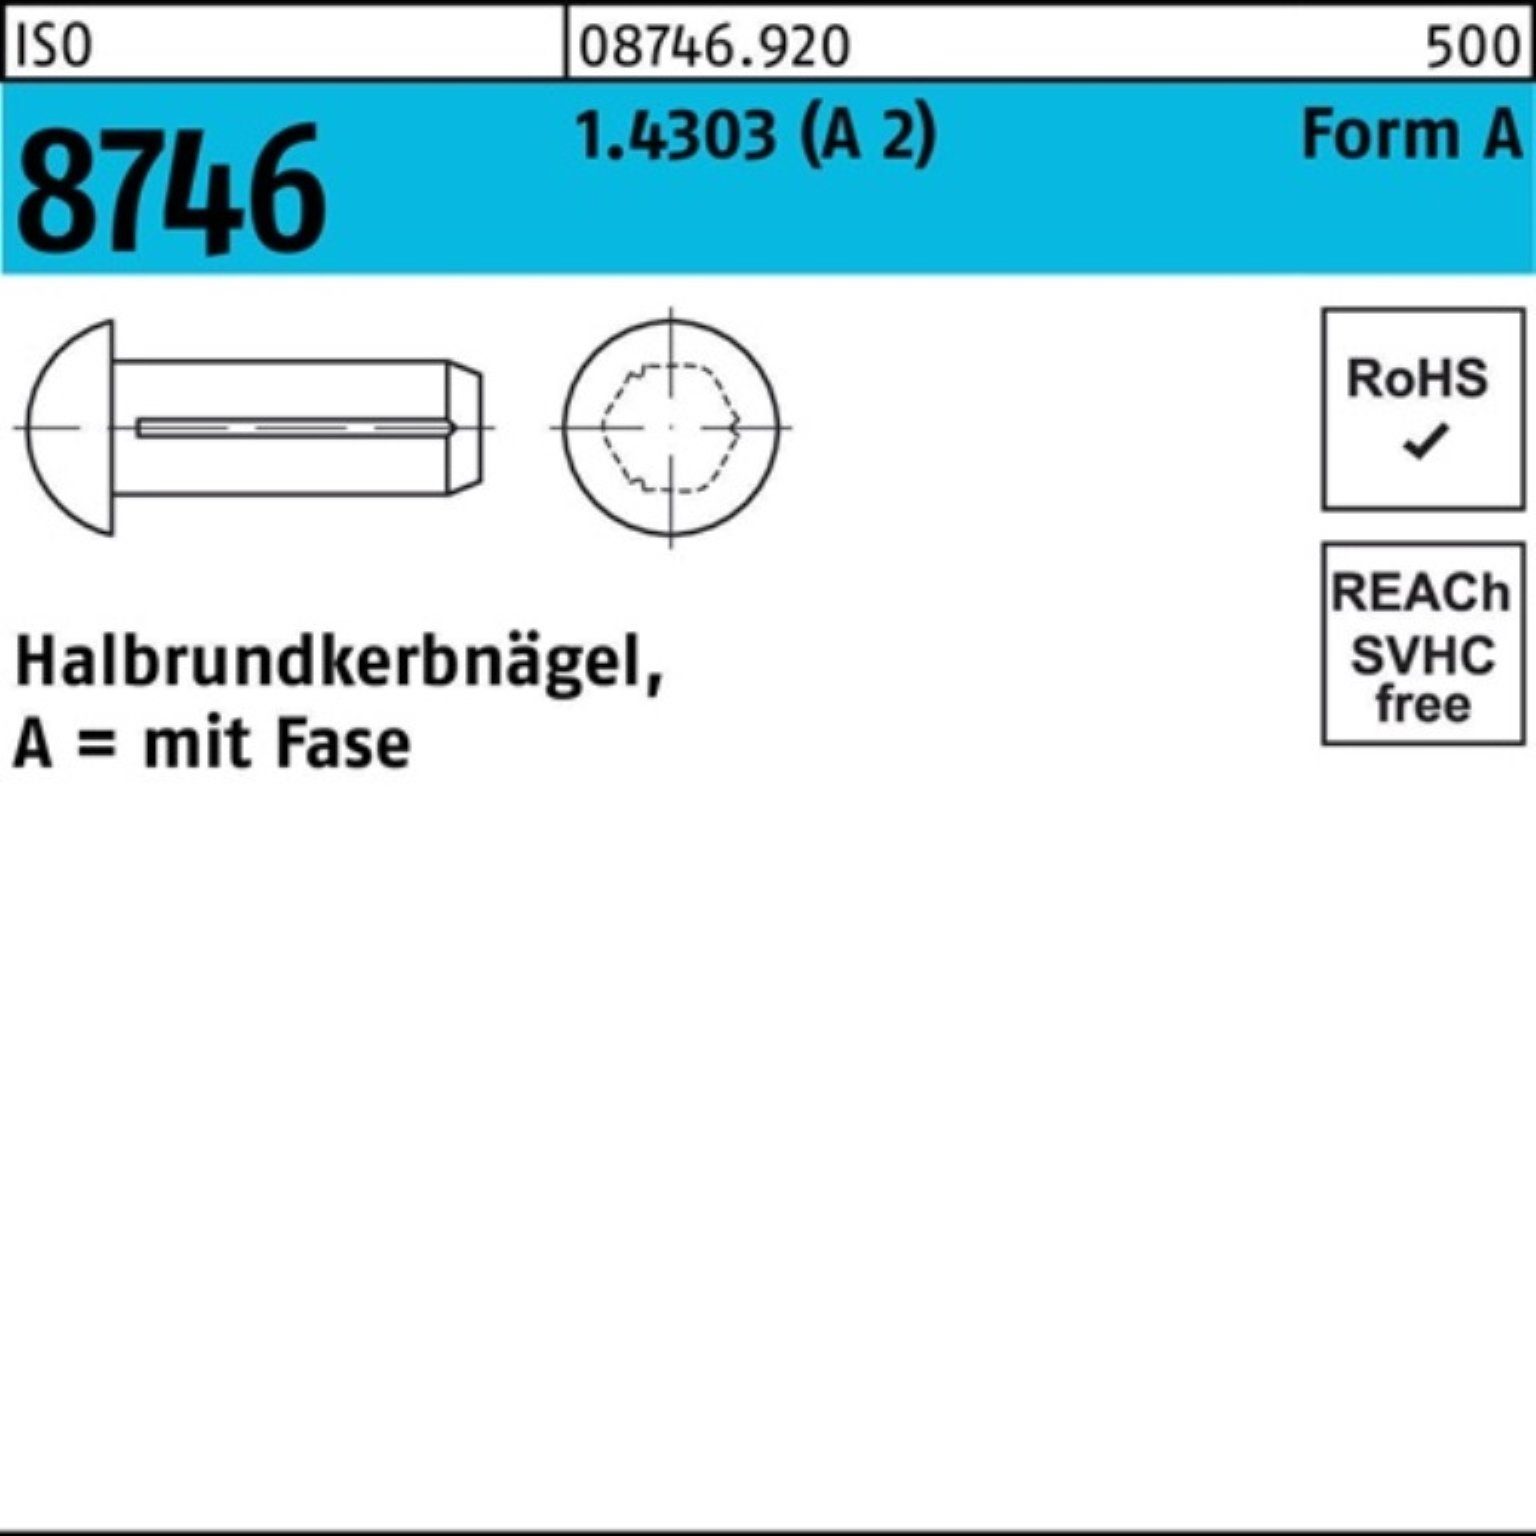 100 2) Stüc 4x 6 100er Nagel 1.4303 Halbrundkerbnagel ISO 8746 Reyher Pack Fase (A